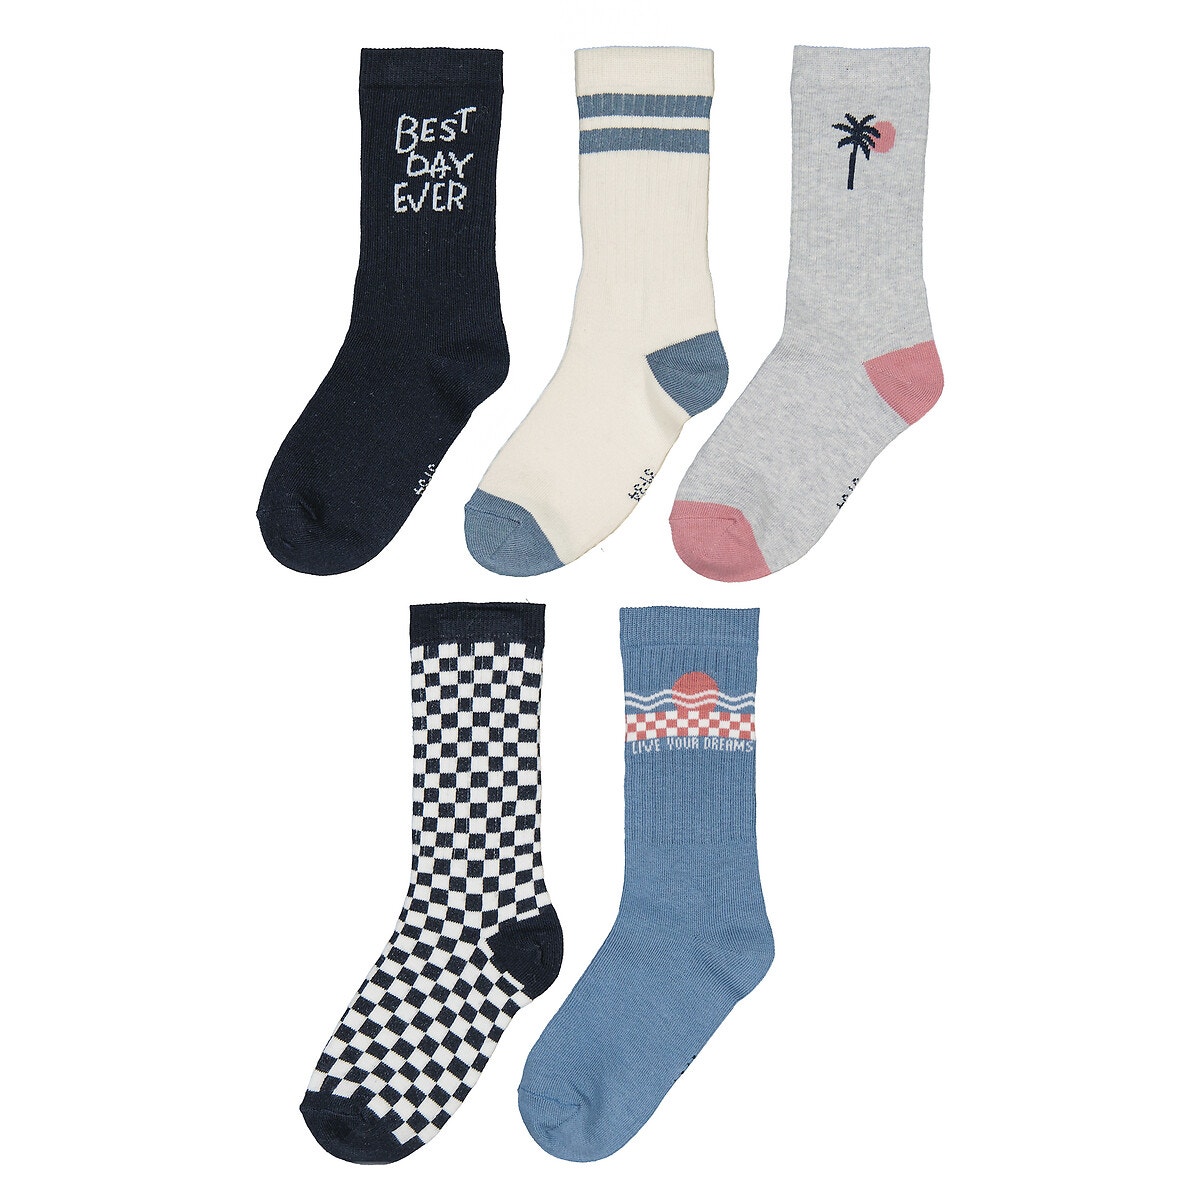 Μόδα > Παιδικά > Αγόρι > Κάλτσες Σετ 5 ζευγάρια κάλτσες